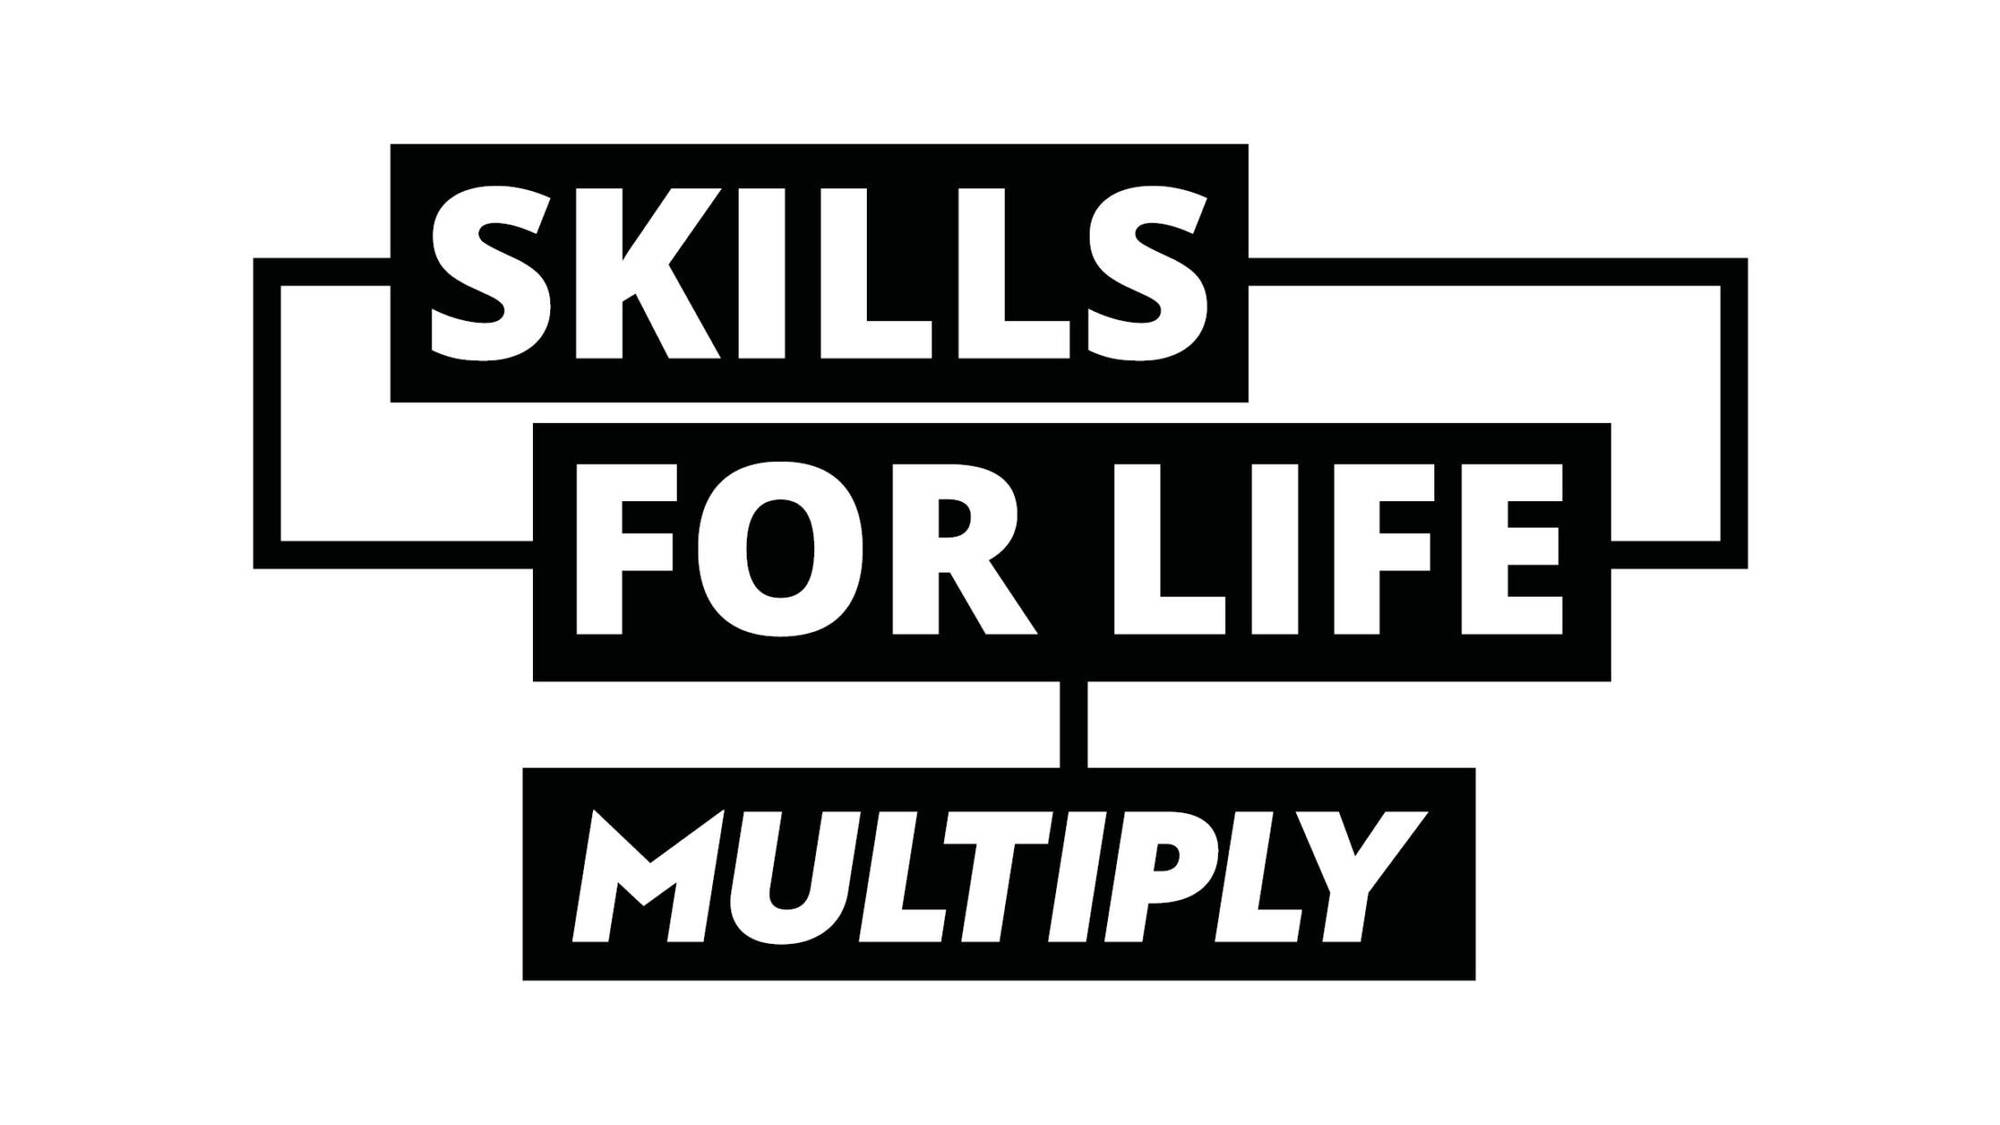 Skills for life - Multiply Logo